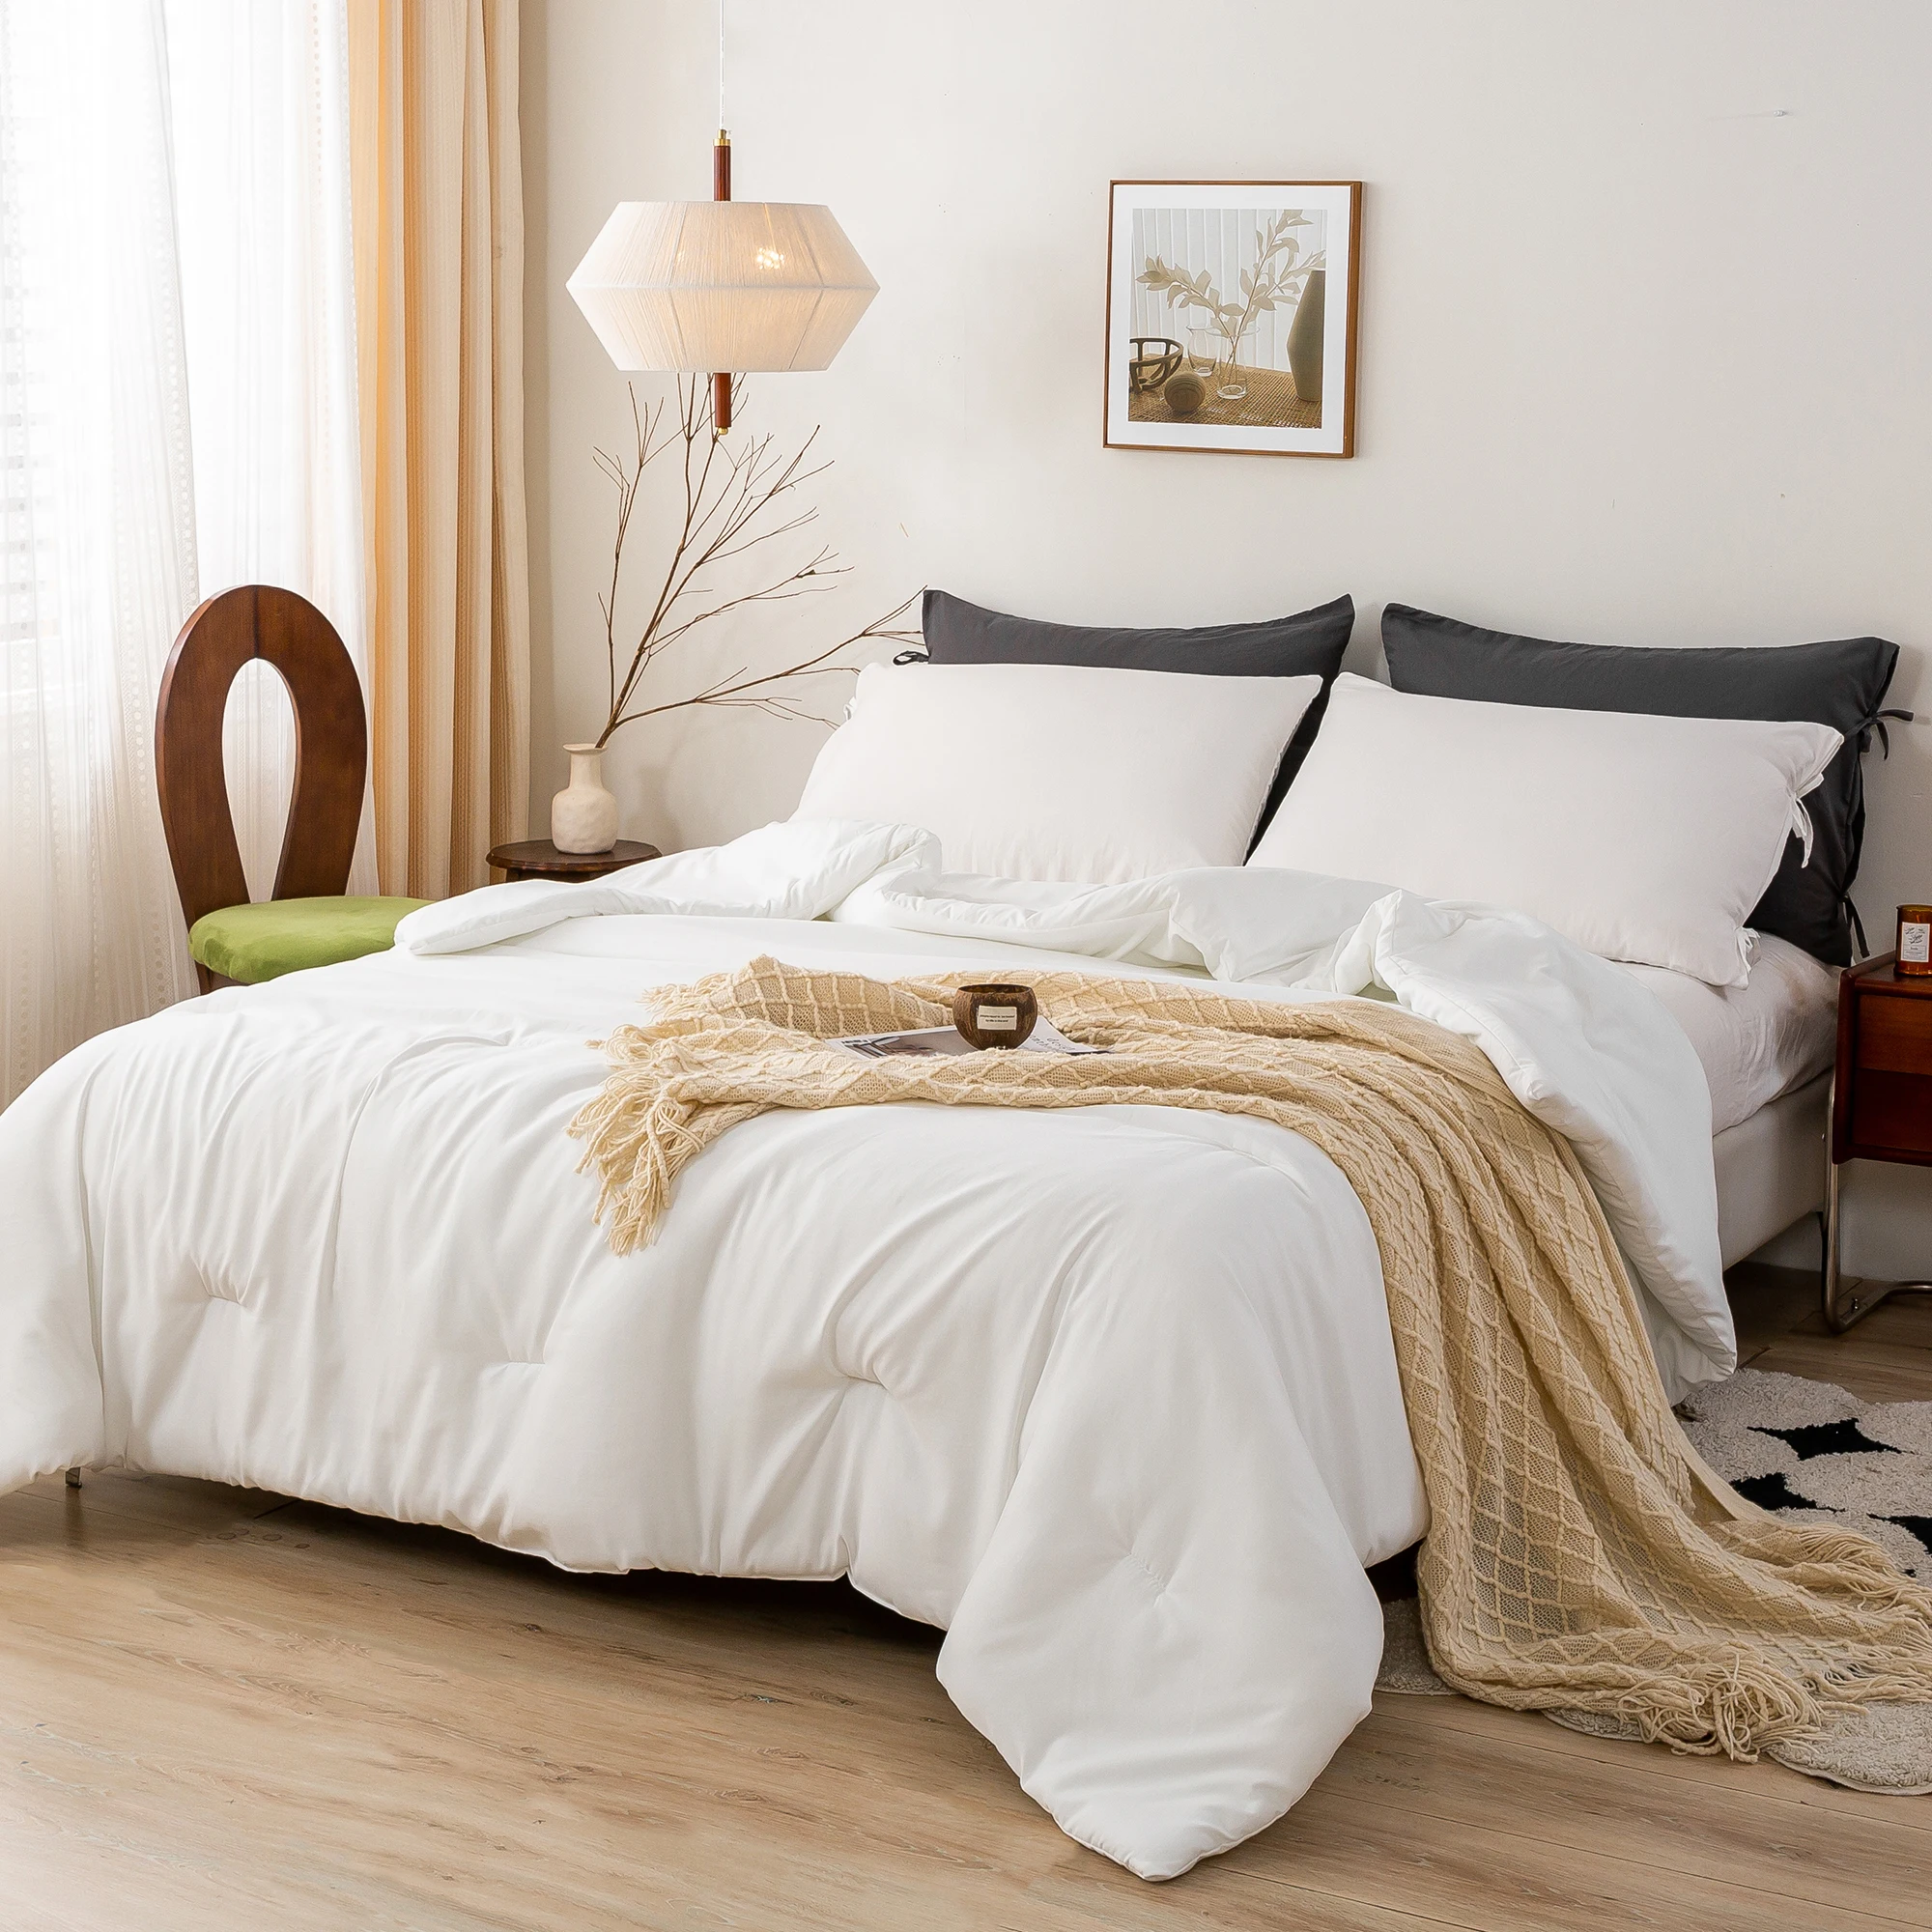 

Мягкая Белая двуспальная Удобная пуховая Альтернативная Подушка большого размера и 2 подушек цвет желтовато-легкое, но теплое всесезонное одеяло для кровати